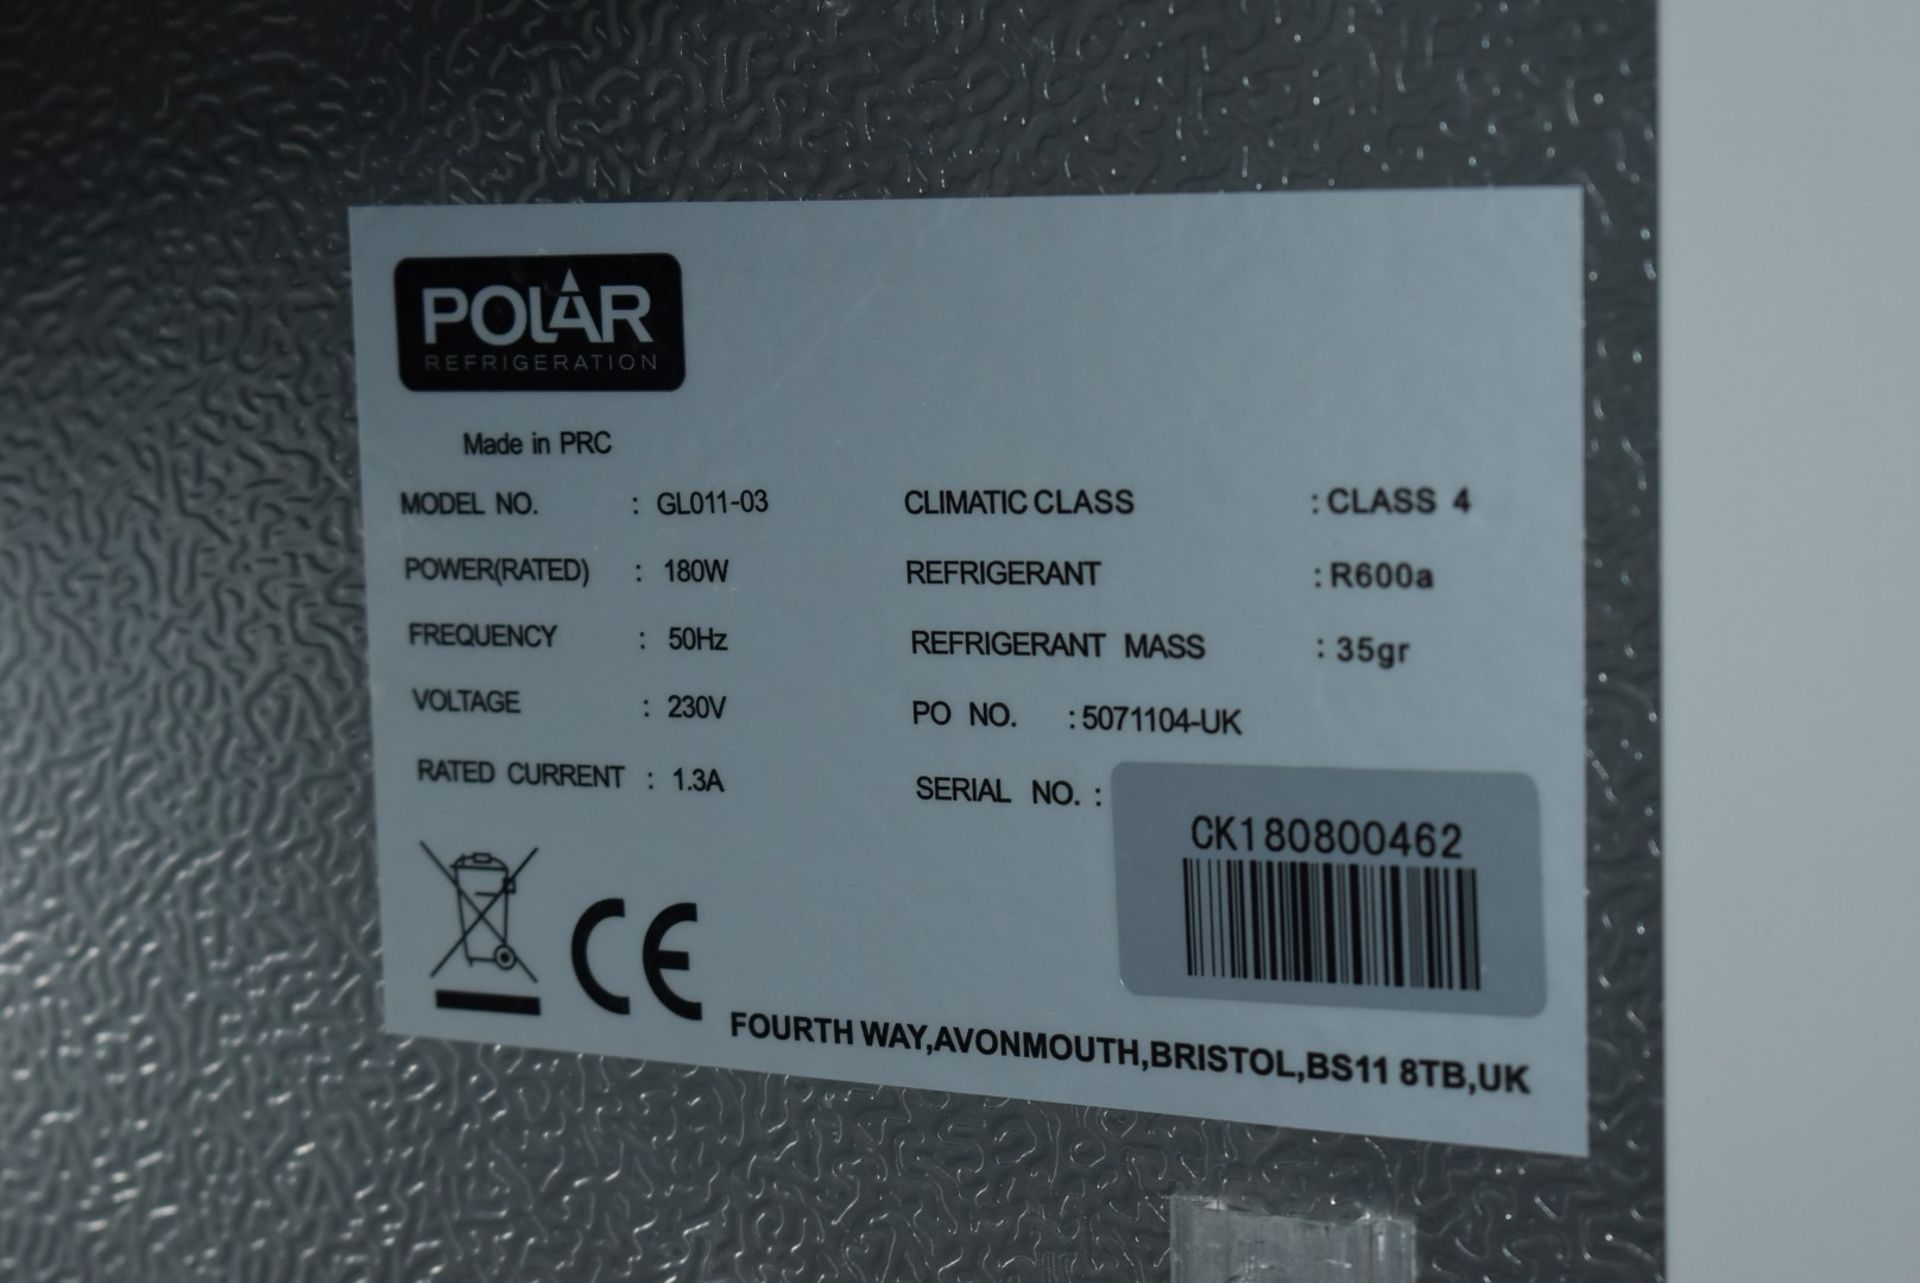 1 x Polar GL011-03 Single Door 60cm Backbar Bottle Cooler - 240v - Ref: WH2-106 B1F - CL999 - - Image 6 of 8